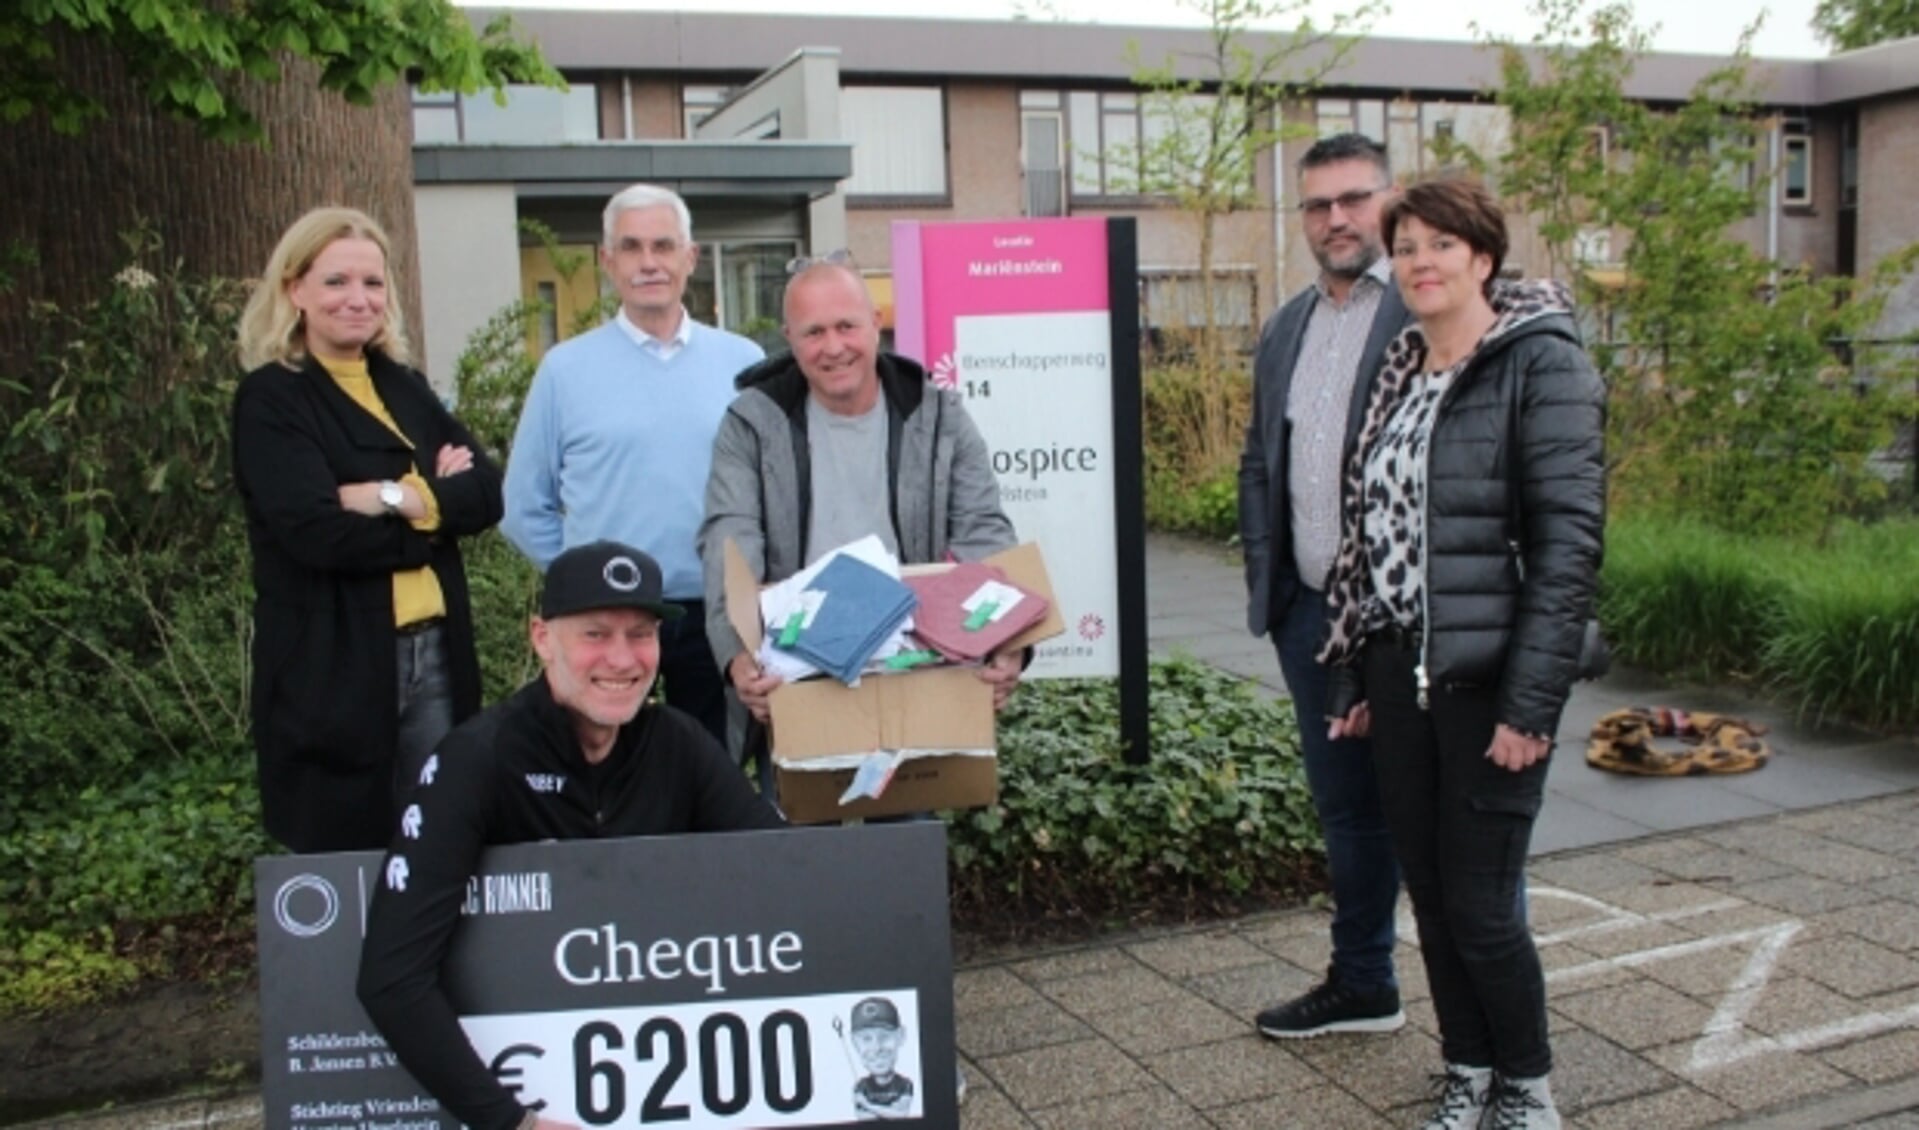 Erik Wierstra, met cheque en sponsors,  draagt bij aan een hartewens van het hospice en Ed Booms (3e van links). Foto: Lysette Verwegen 